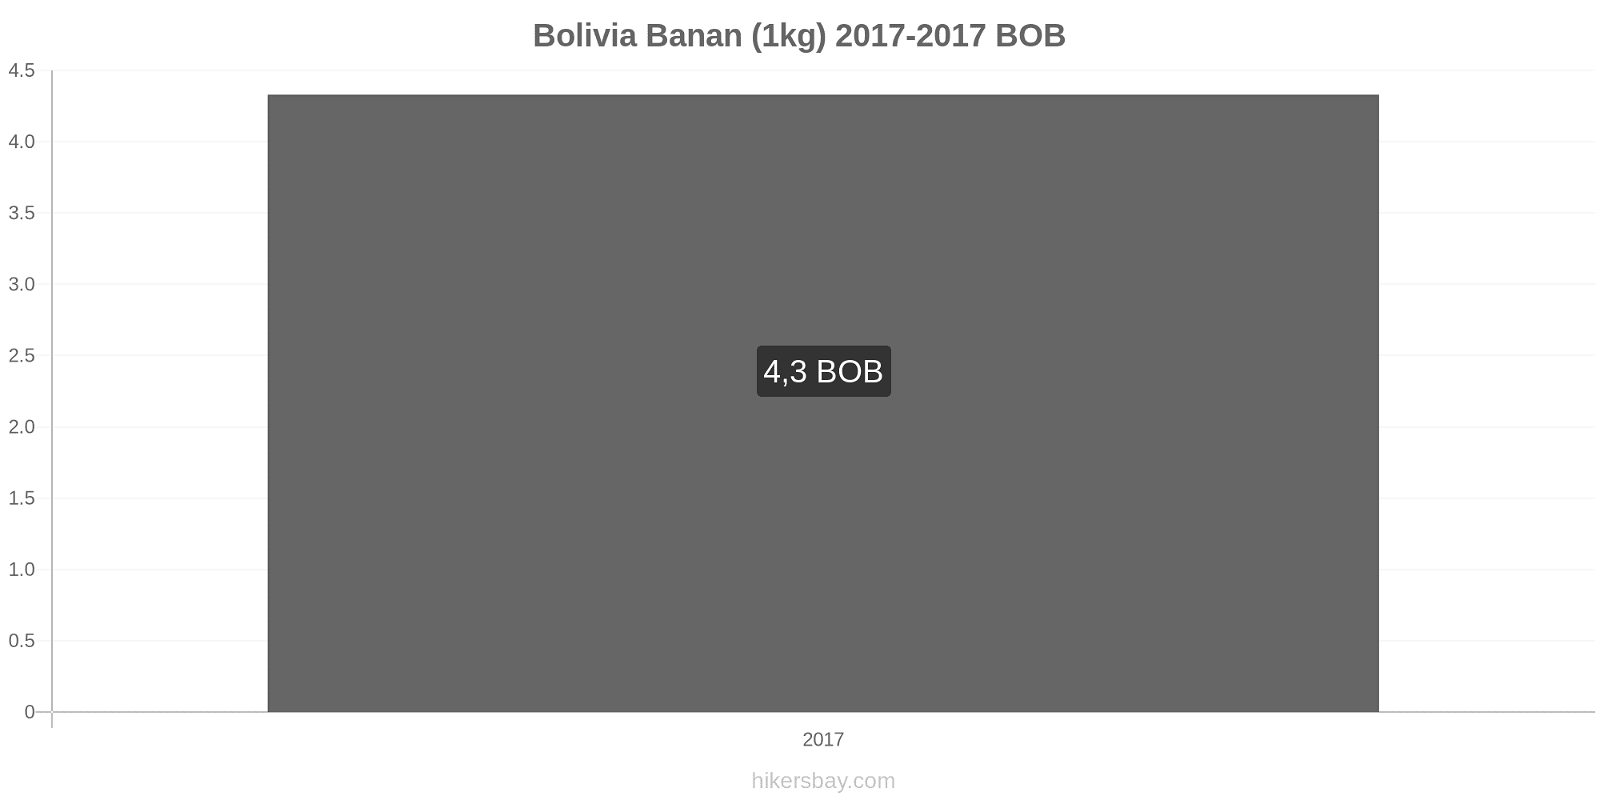 Bolivia prisændringer Bananer (1kg) hikersbay.com